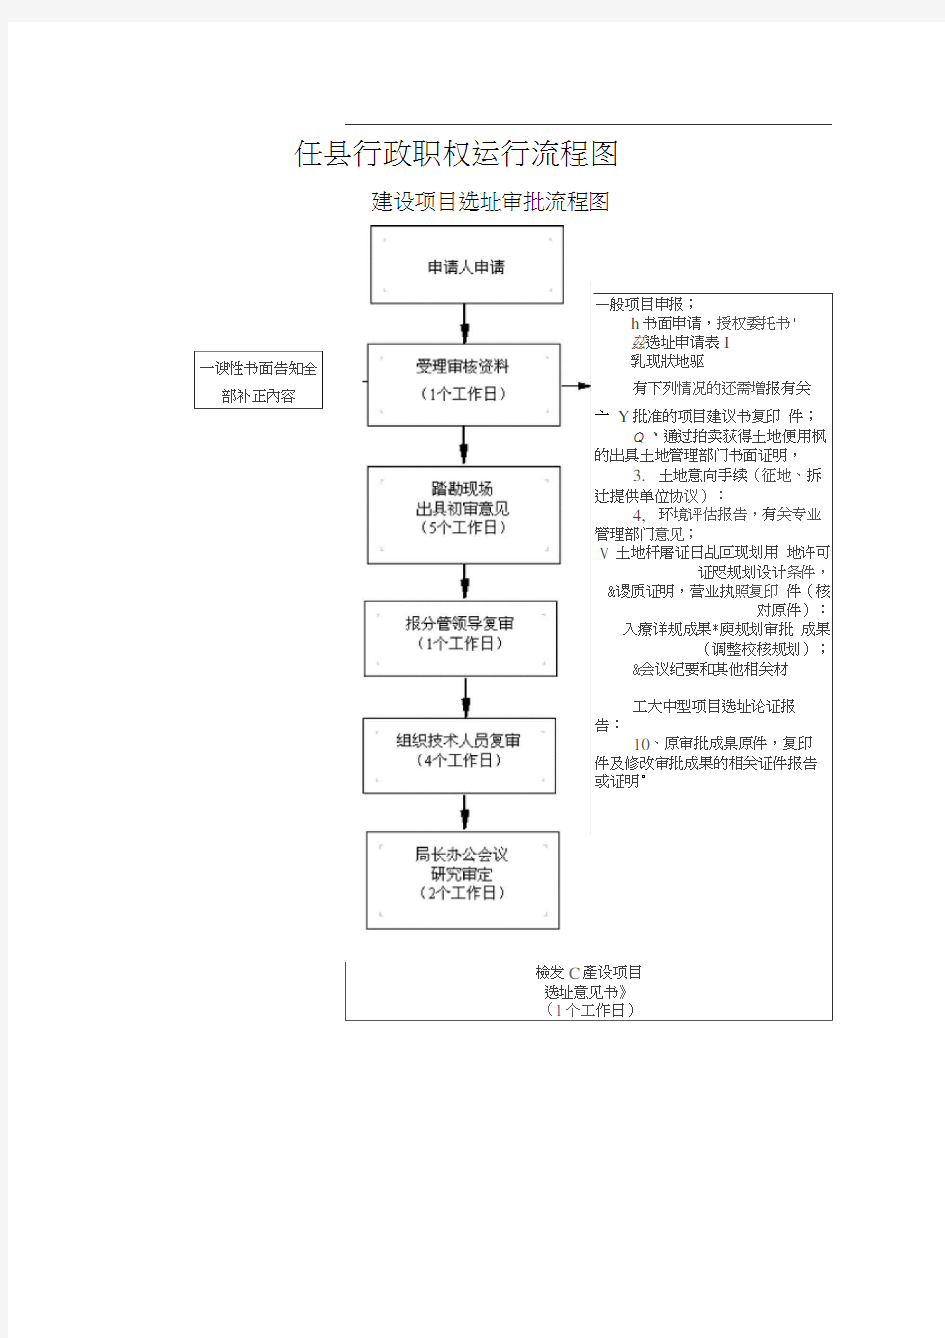 任县行政职权运行流程图